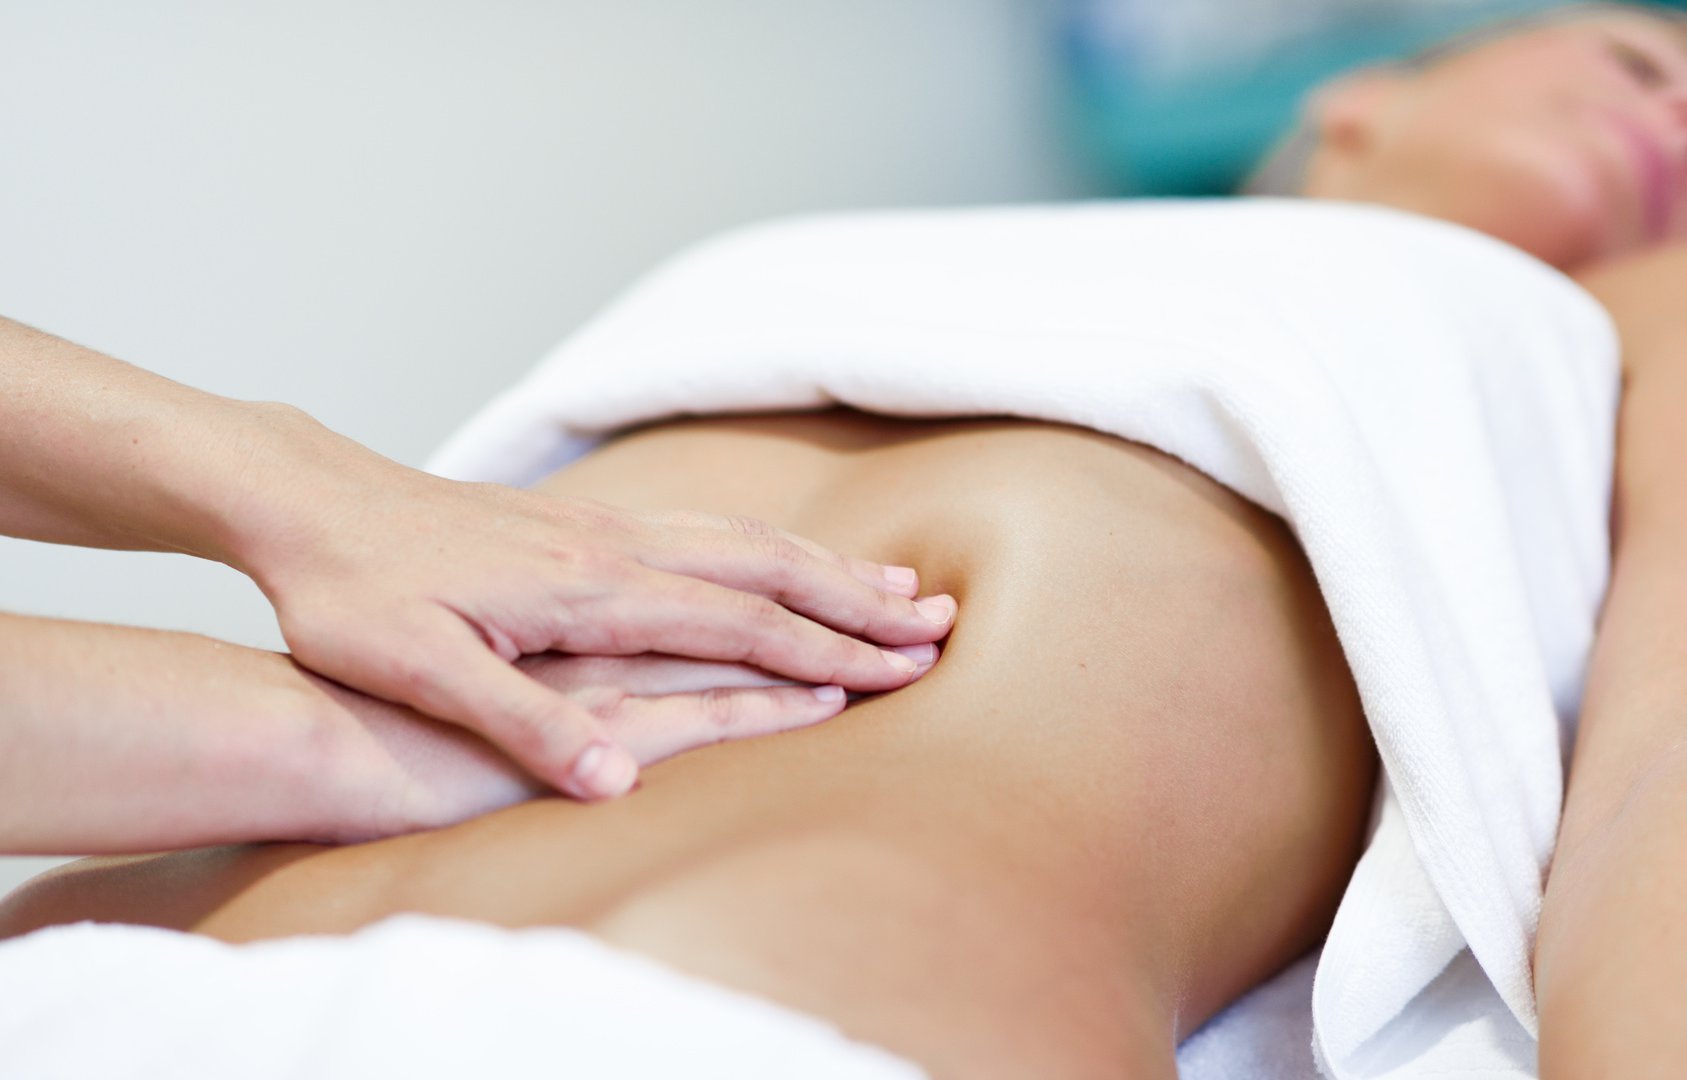 Terapia wisceralna, czyli starosłowiański masaż brzucha – co to jest, efekty, wskazania i przeciwwskazania